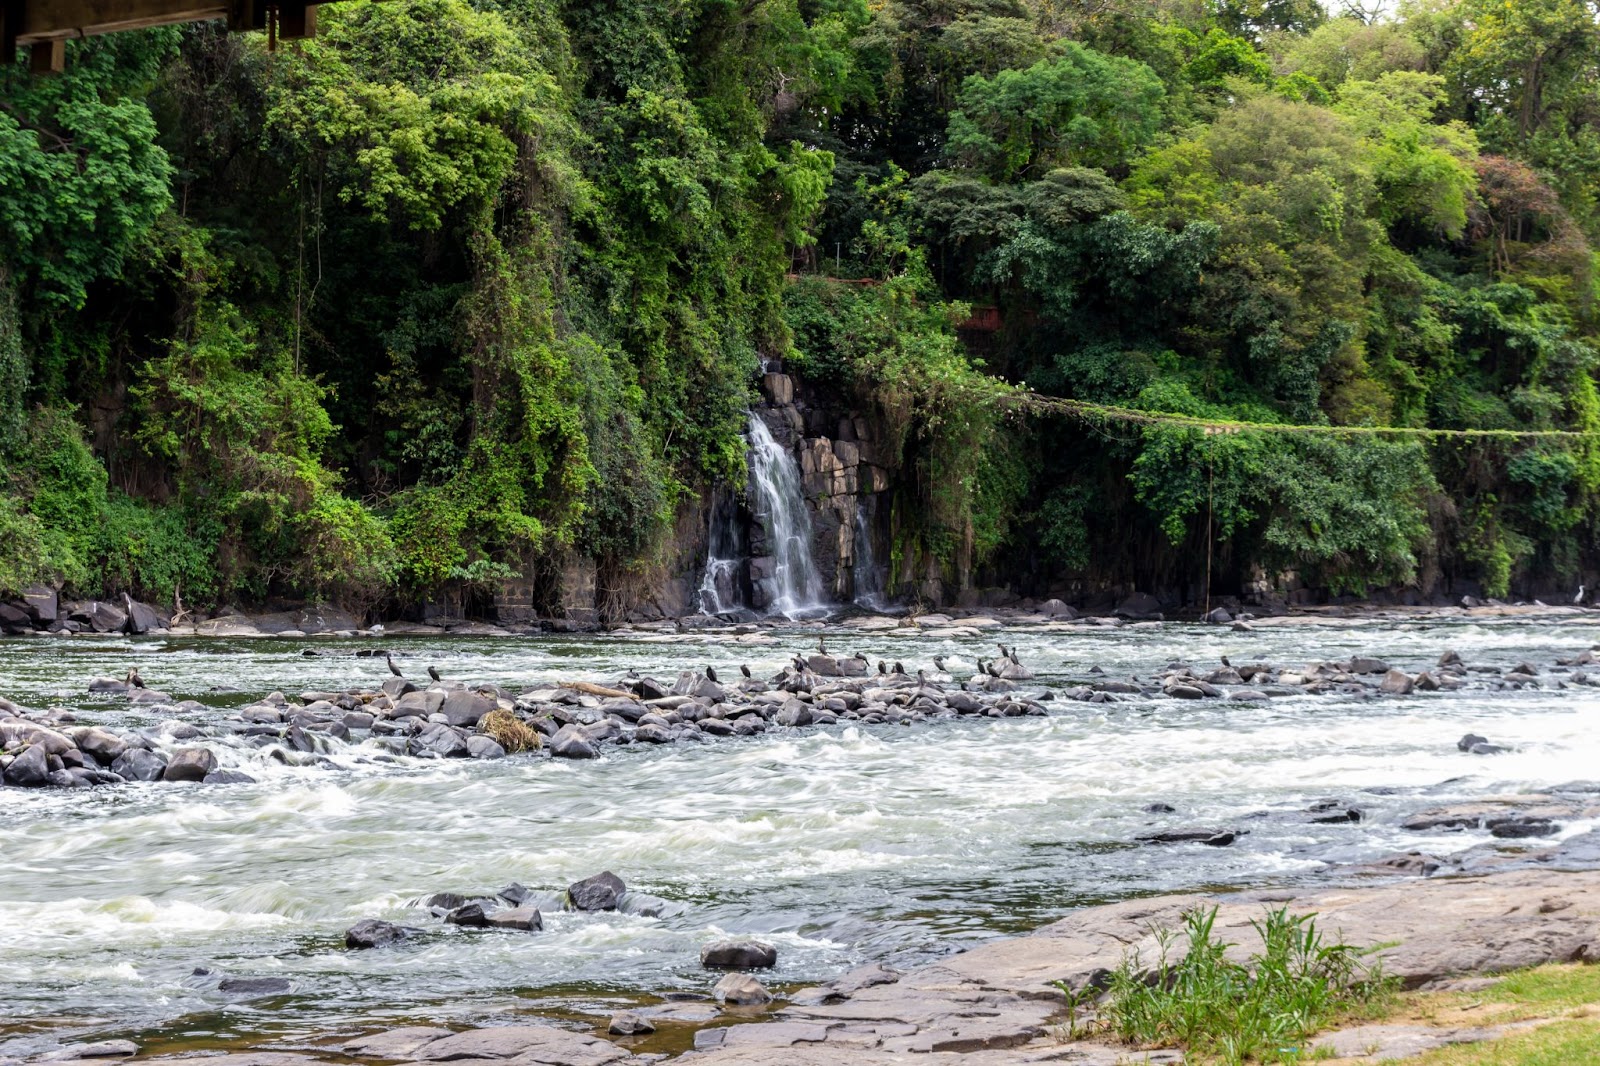 Trecho do Rio Piracicaba. As águas escuras correm por entre pedregulhos e há uma pequena queda d’água saindo de um trecho de mata situado na beira do rio